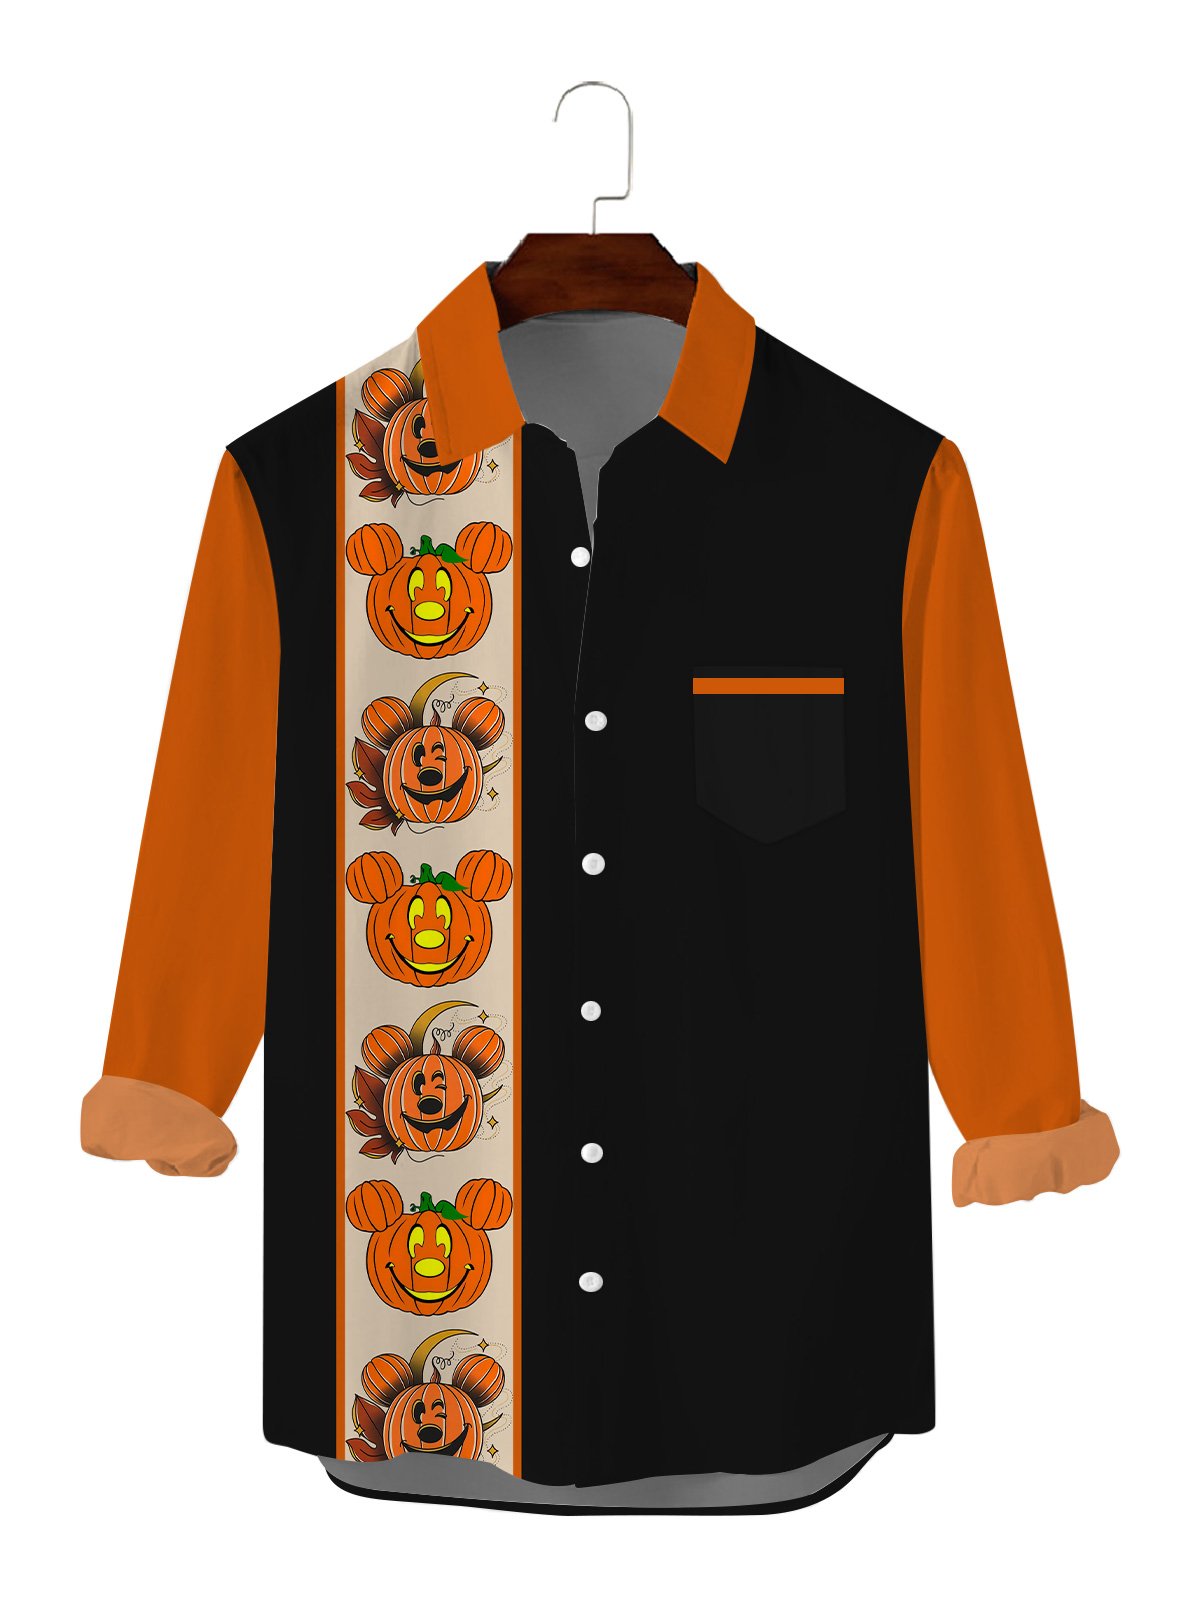 Fun Halloween Pumpkin Print Long Sleeve Shirt